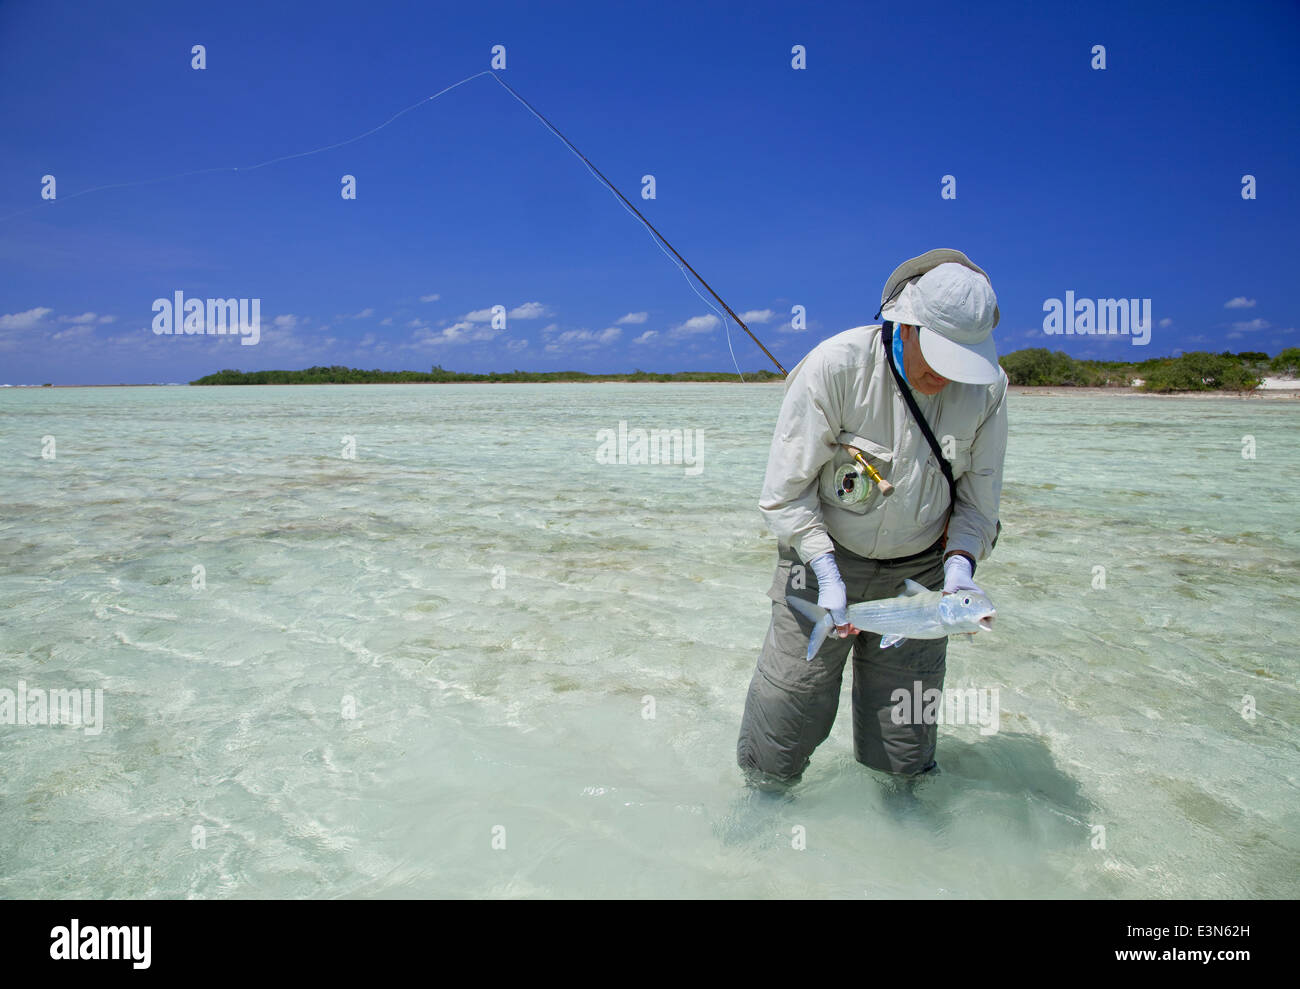 Pesca con mosca de bonefish de agua salada en las islas de las Bahamas Foto de stock